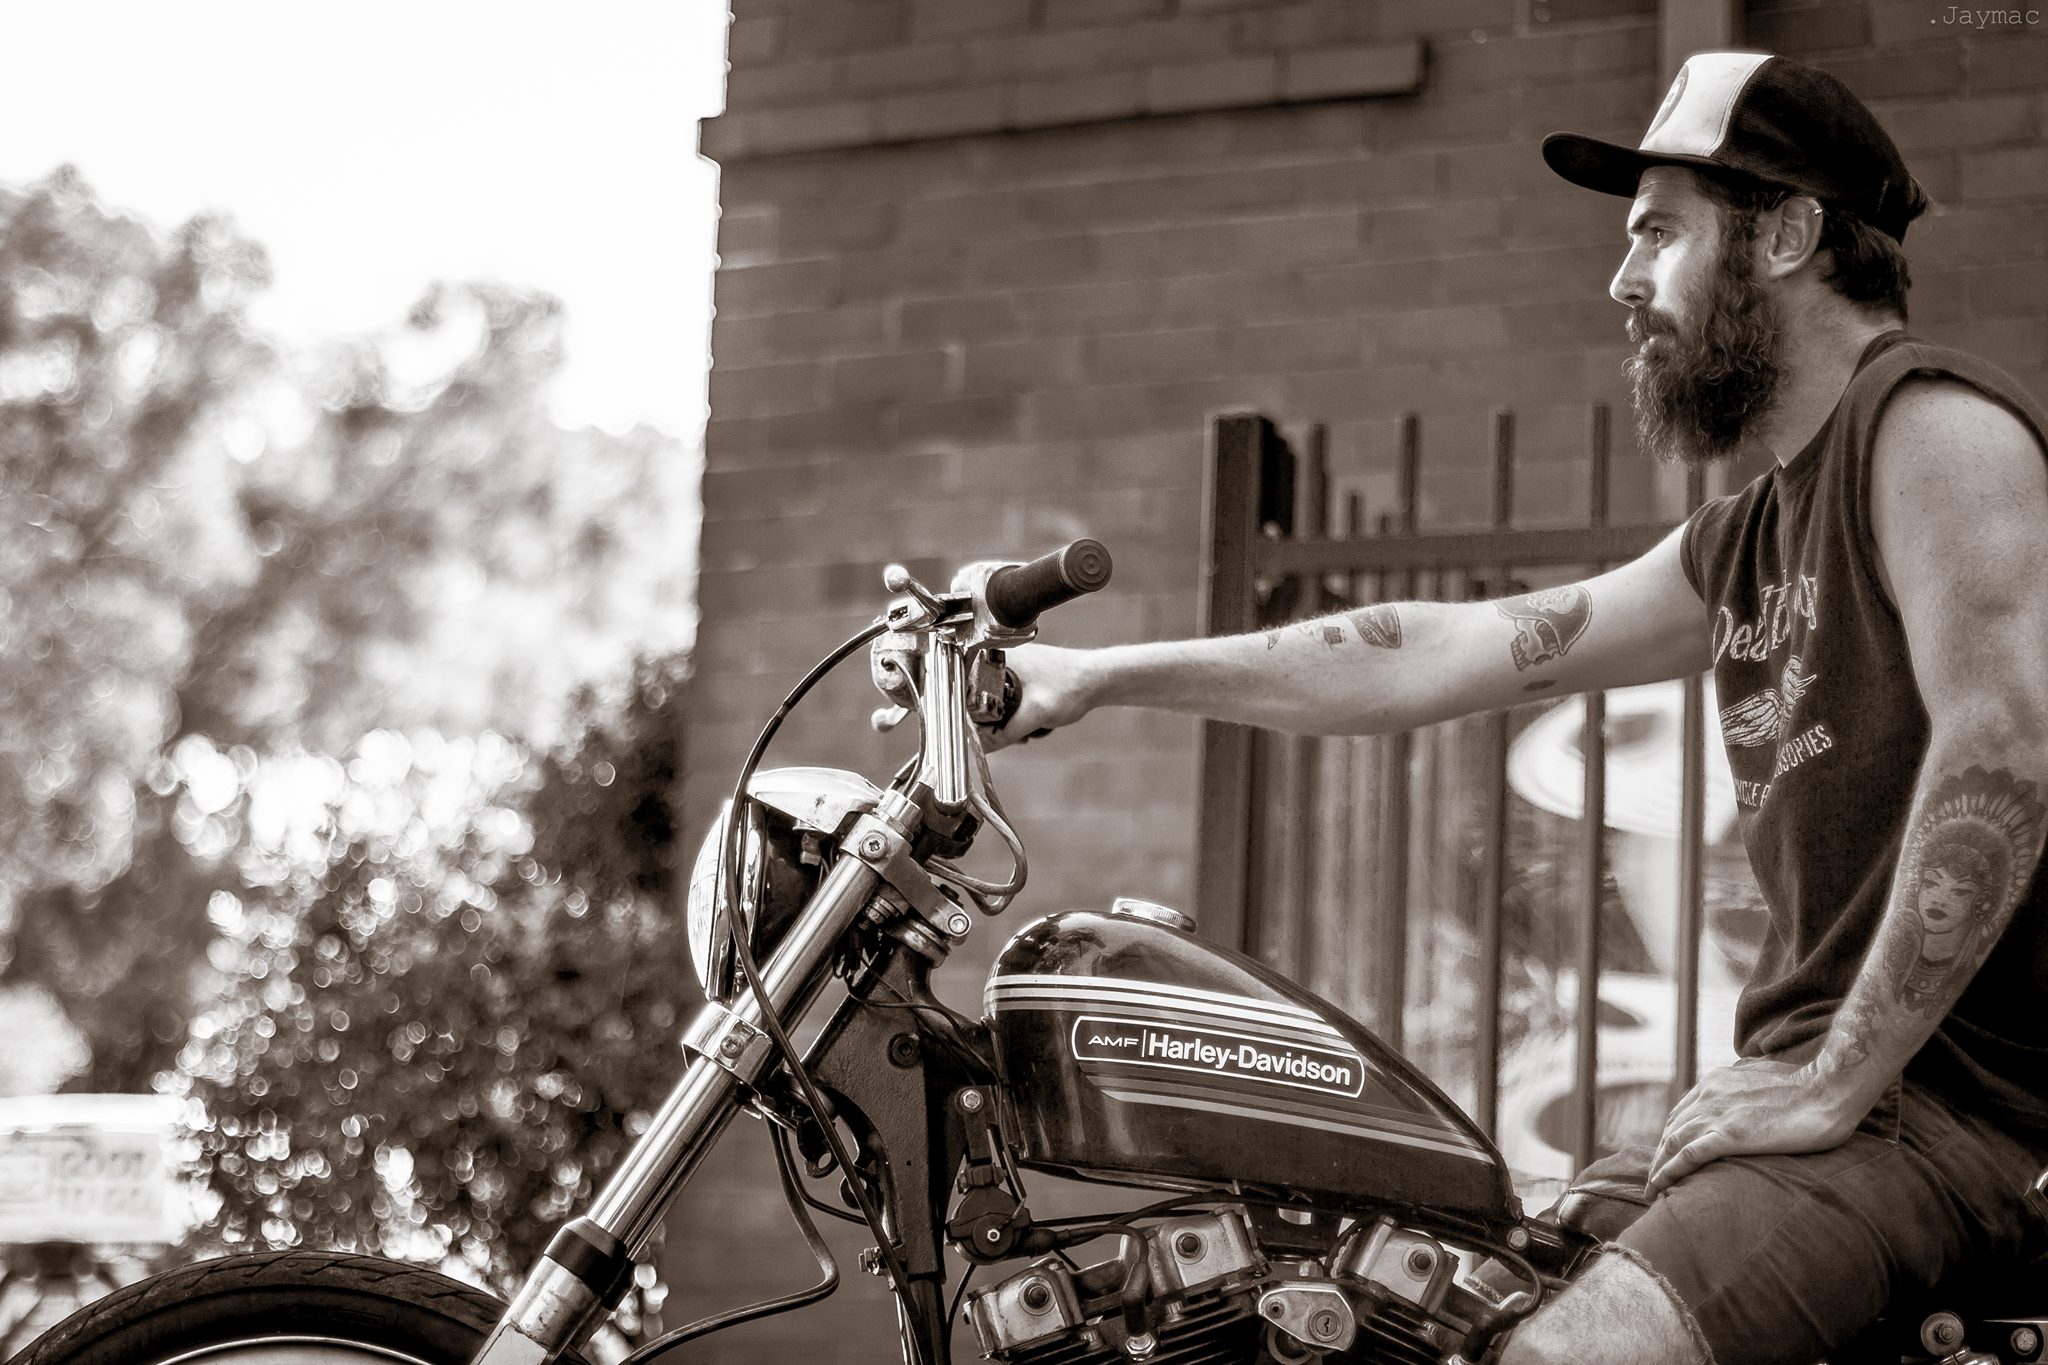 Jaymac Photography : quand t’as envie de te rincer l’œil… avec des belles motos